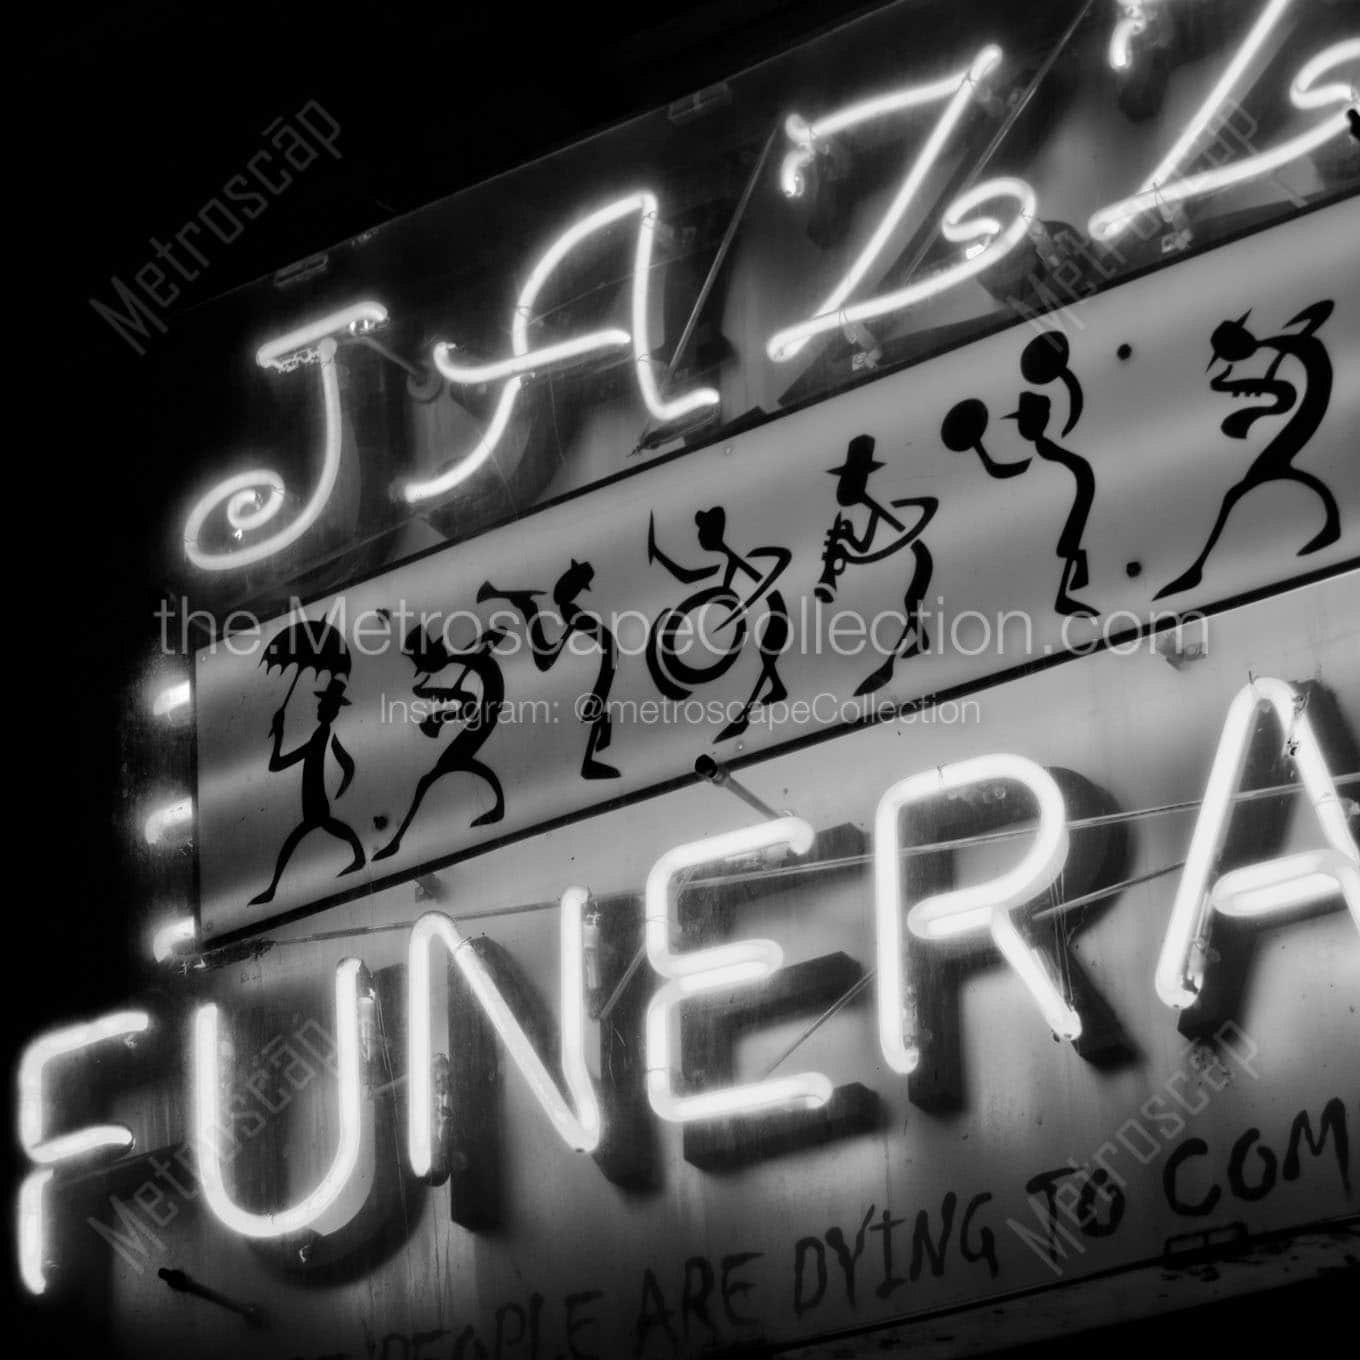 jazz funeral sign Black & White Office Art